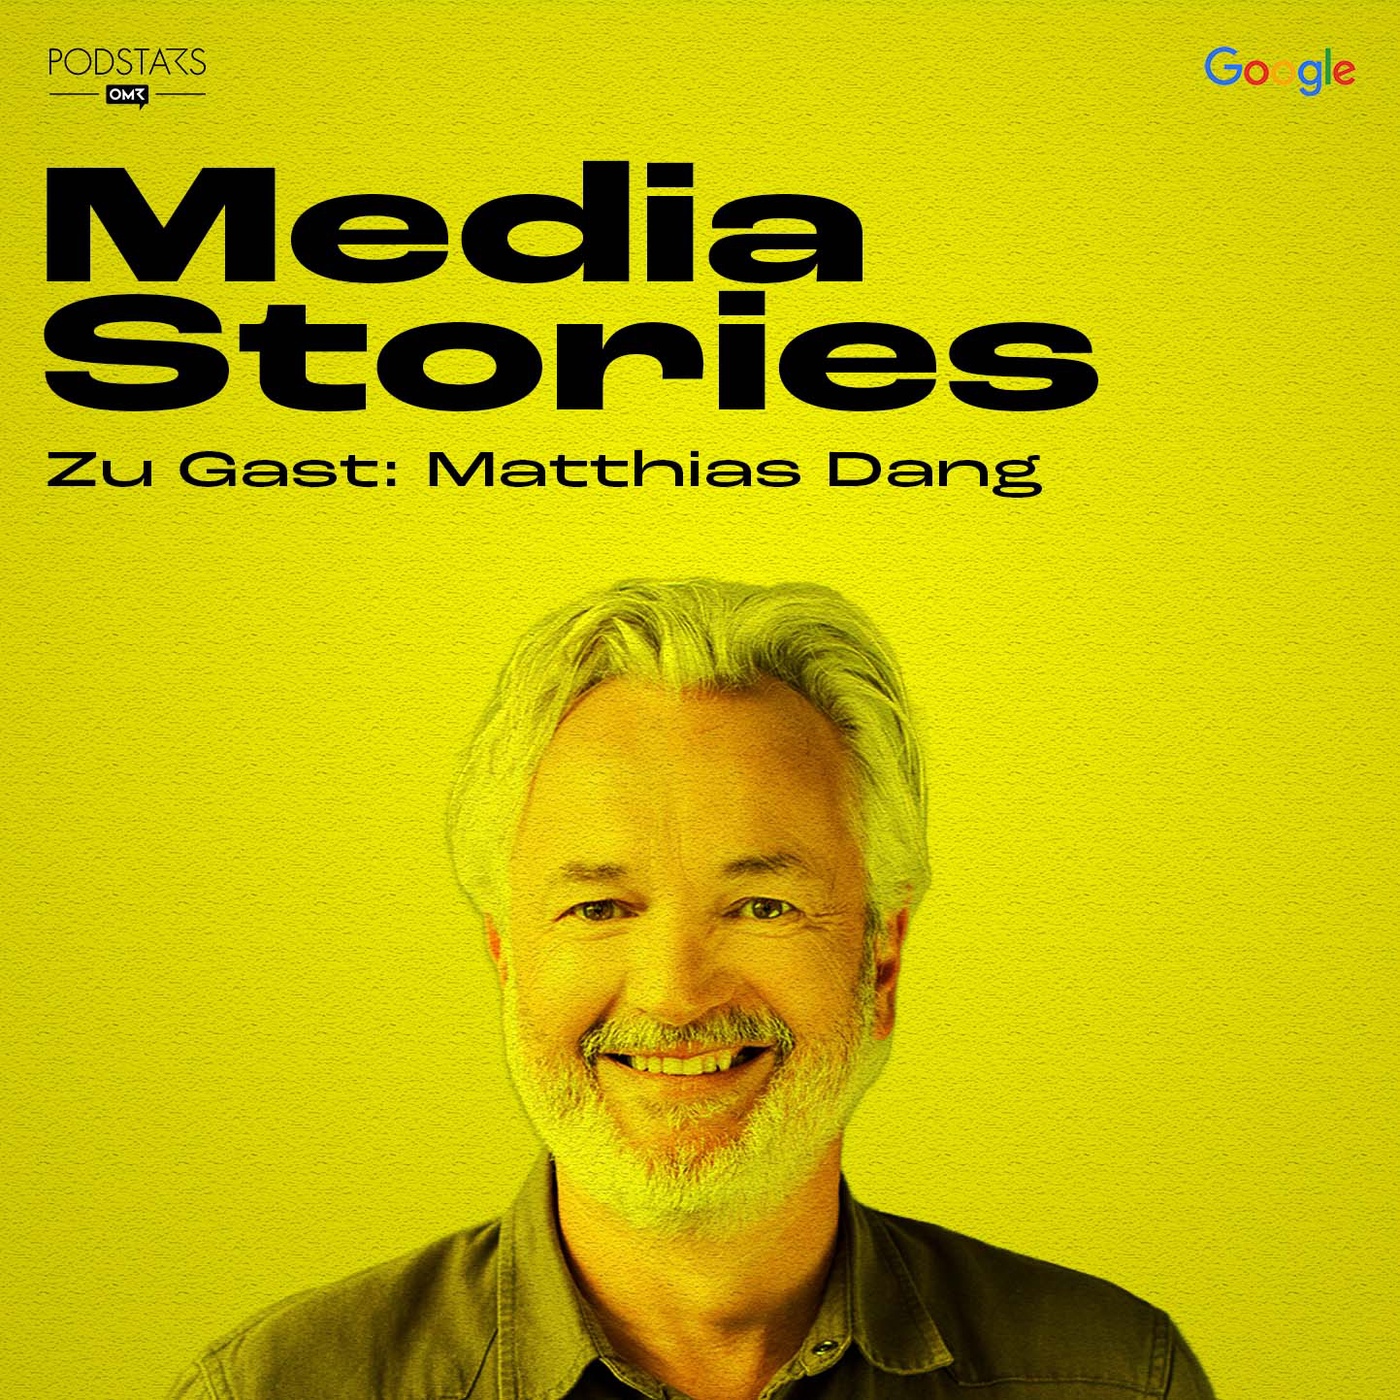 Matthias Dang, wie steht es um RTL+ als erste medienübergreifende Streaming-Plattform?